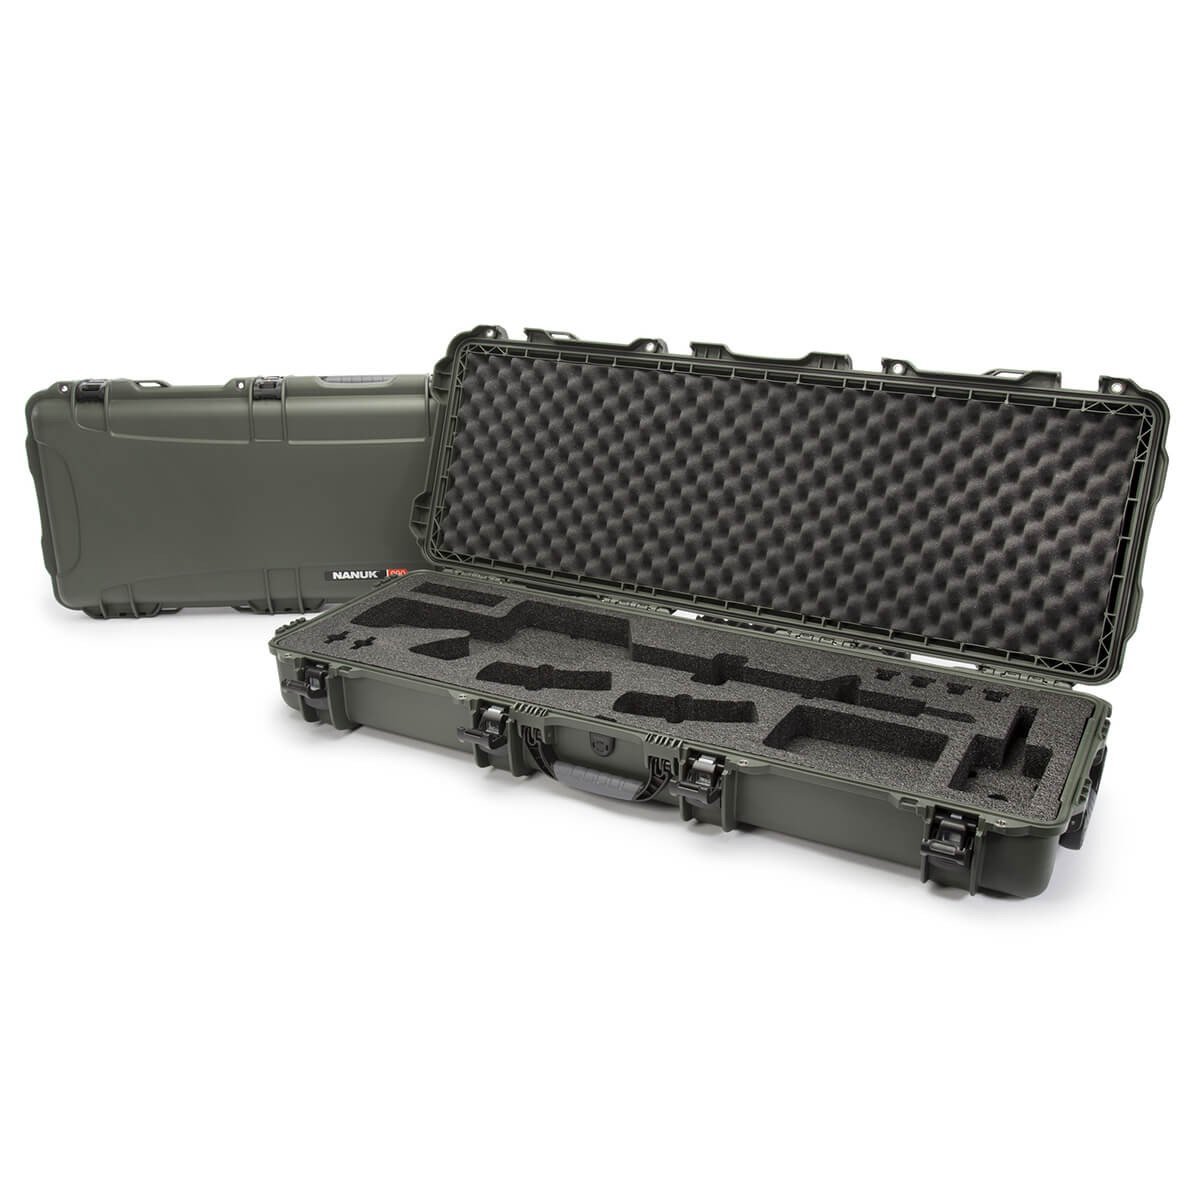 NANUK 990 AR 15 Case  Official NANUK Protective Gun Case Online